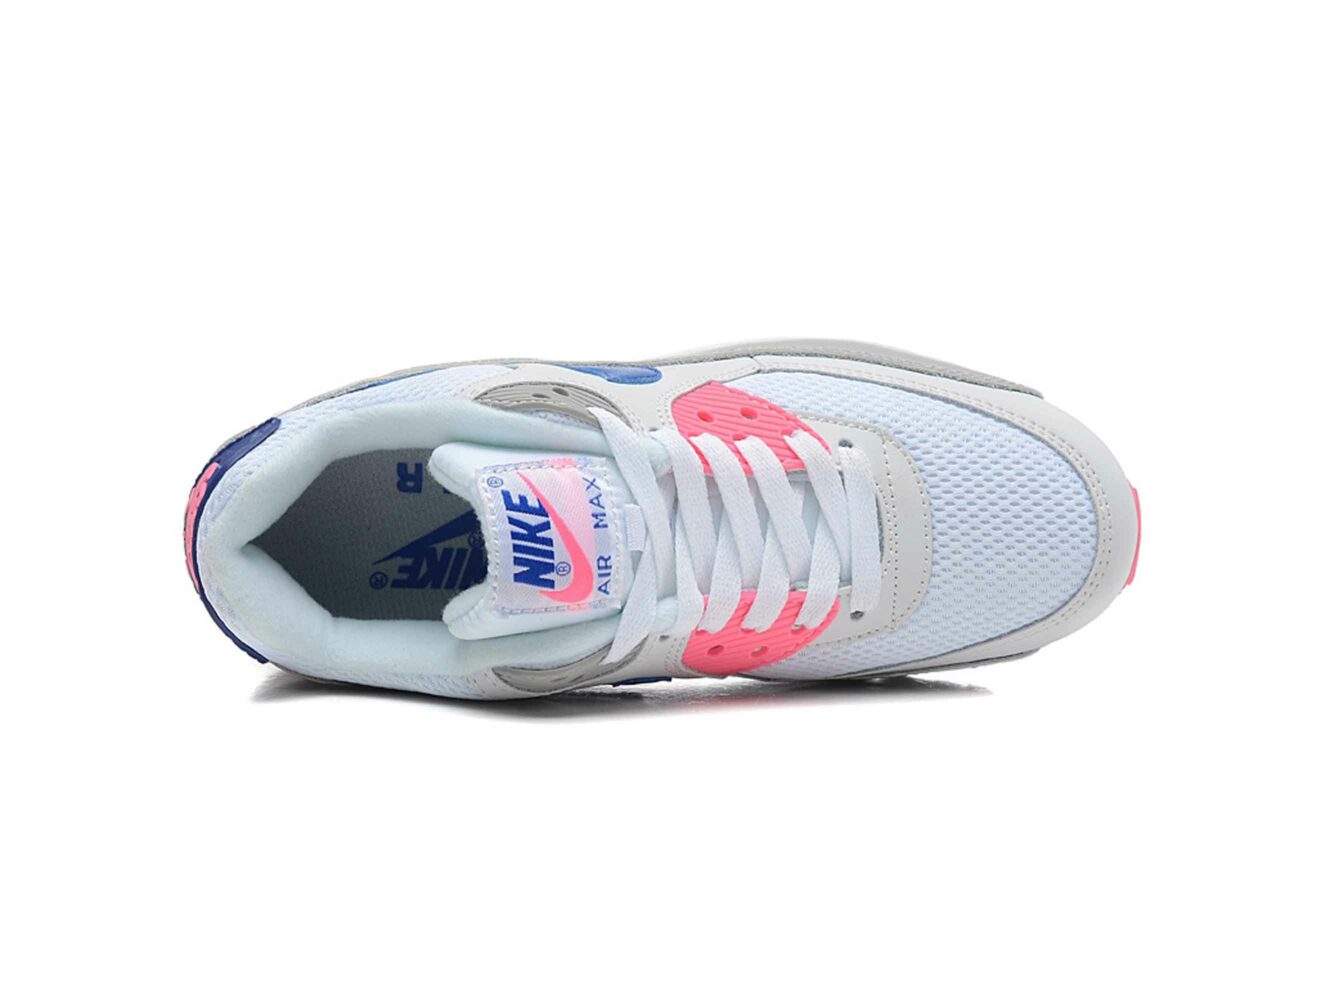 Nike Air Max 90 White Pink Blue Купить